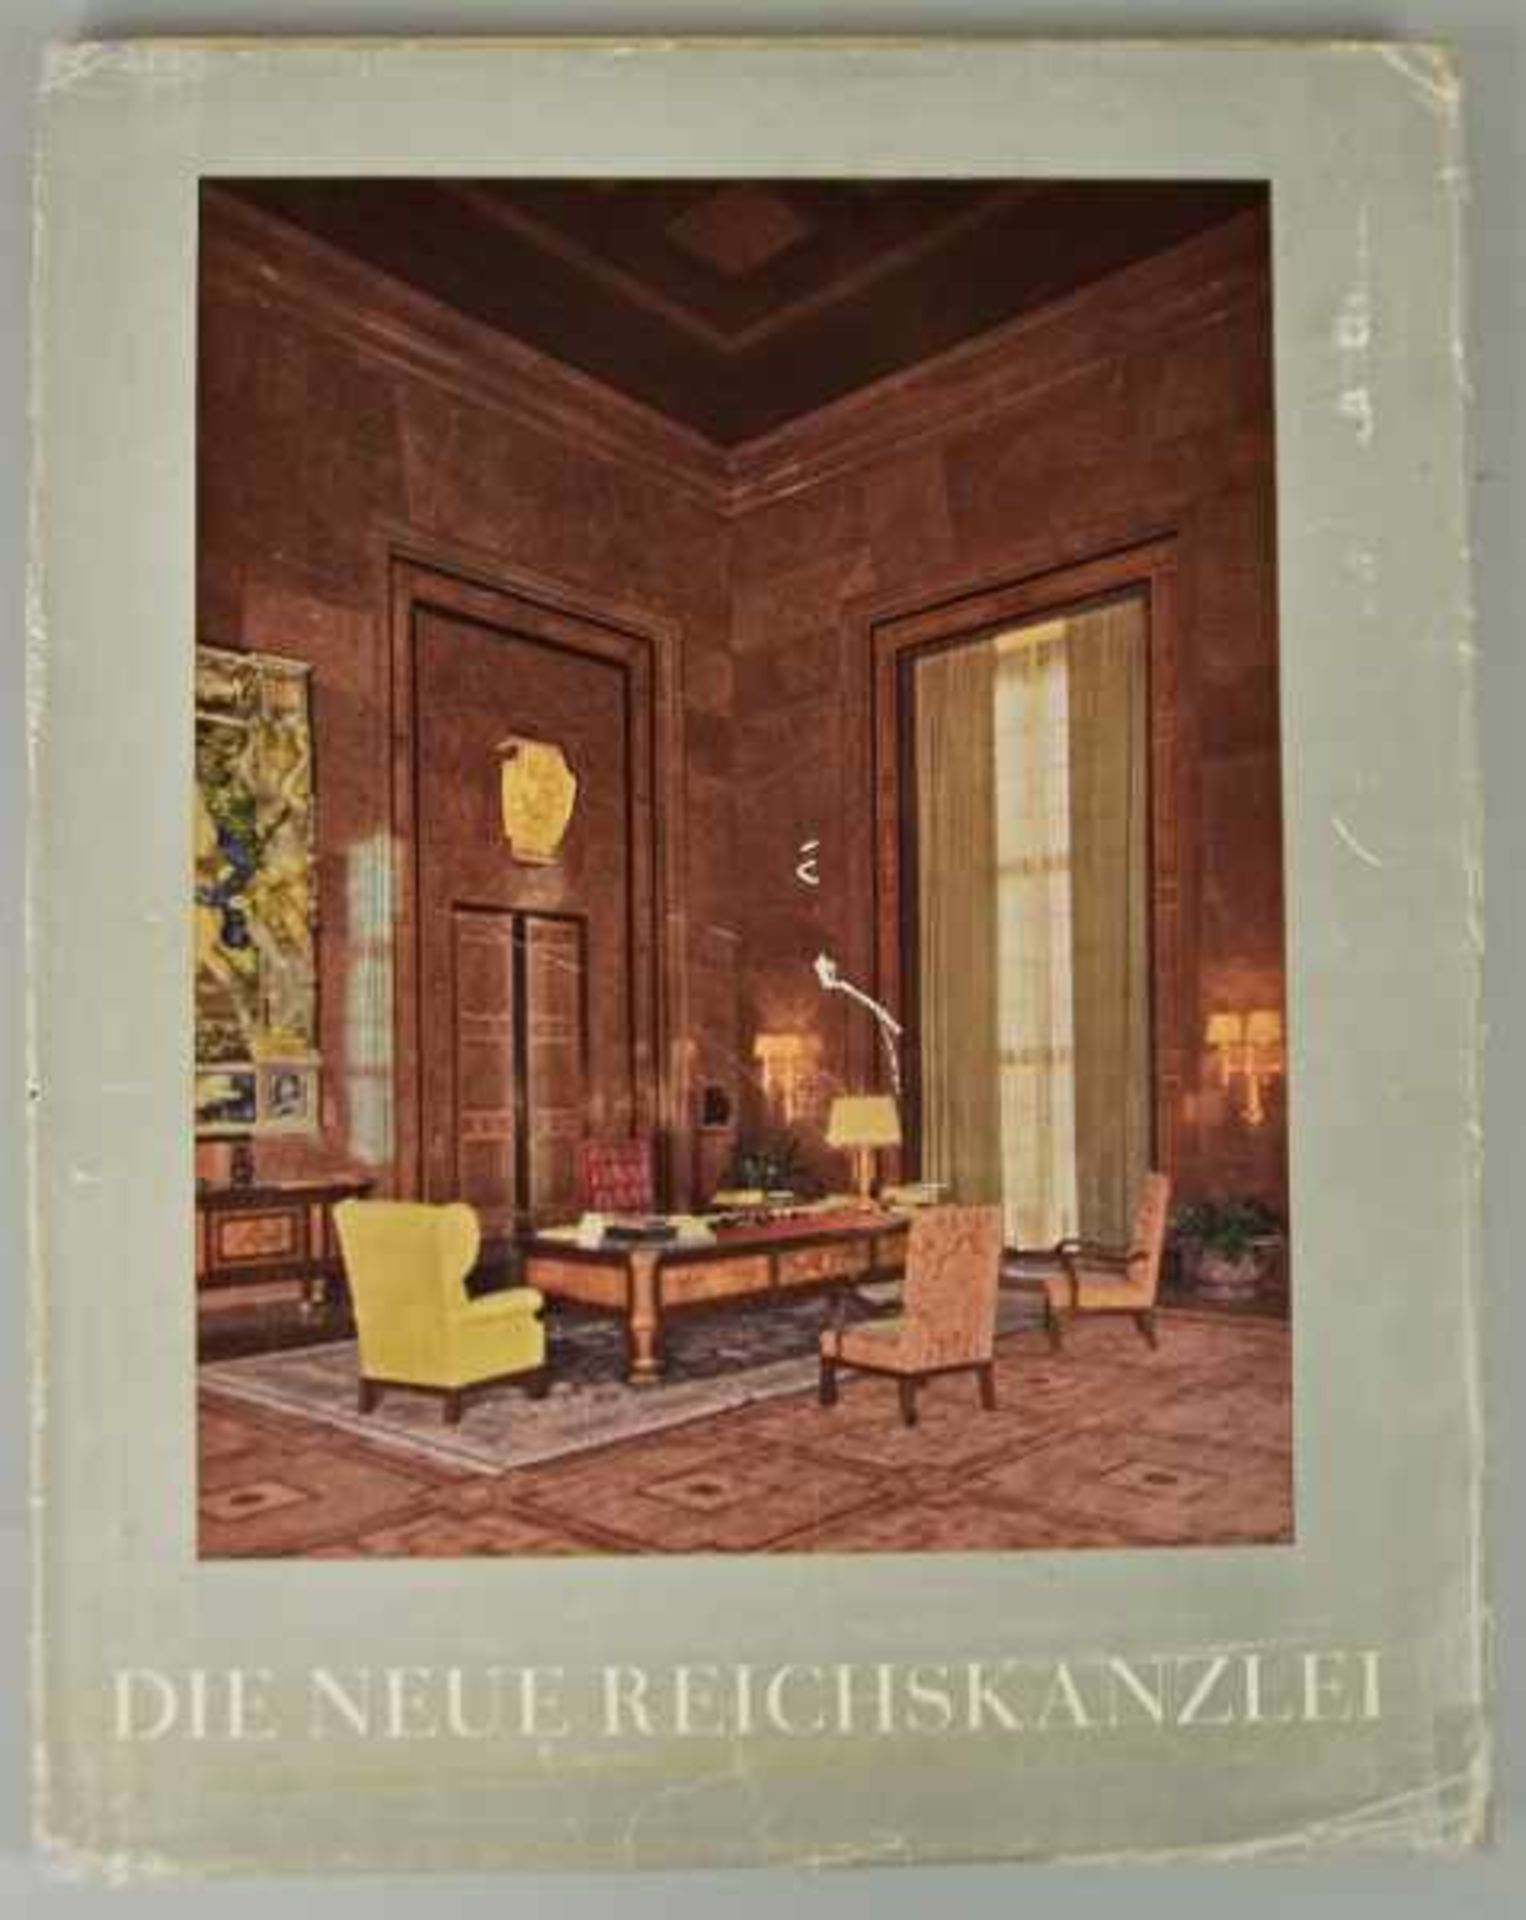 ALBERT SPEER "Die Neue Reichskanzlei", Zentralverlag der NSDAP., Franz Eher Nachf., GmbH.,